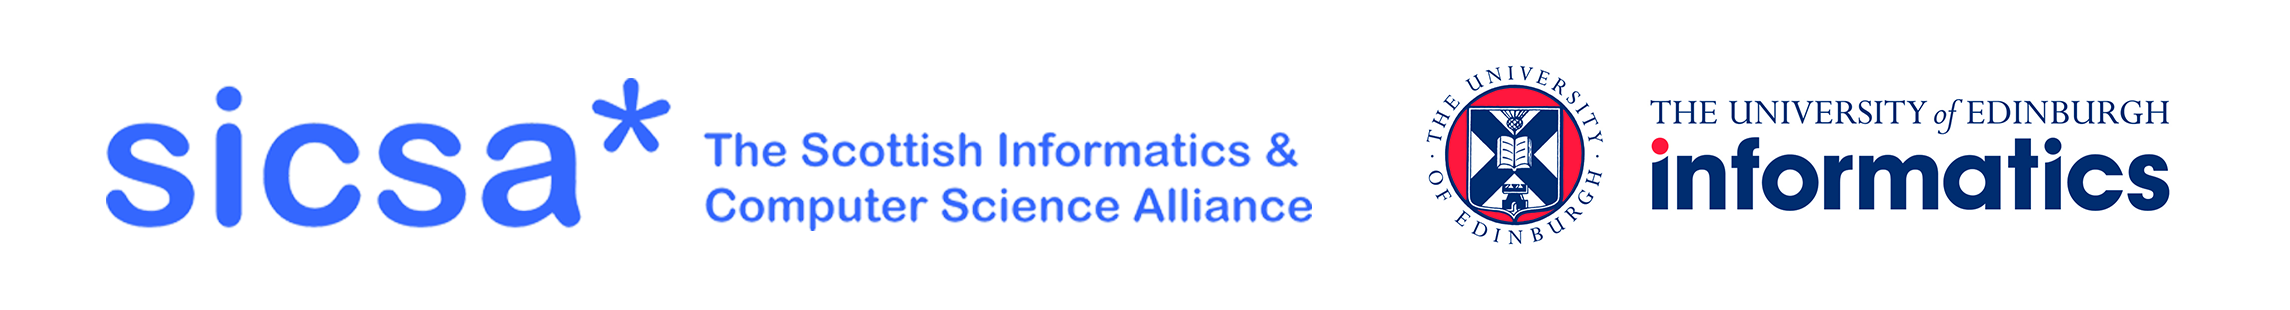 SICSA and School of Informatics logo